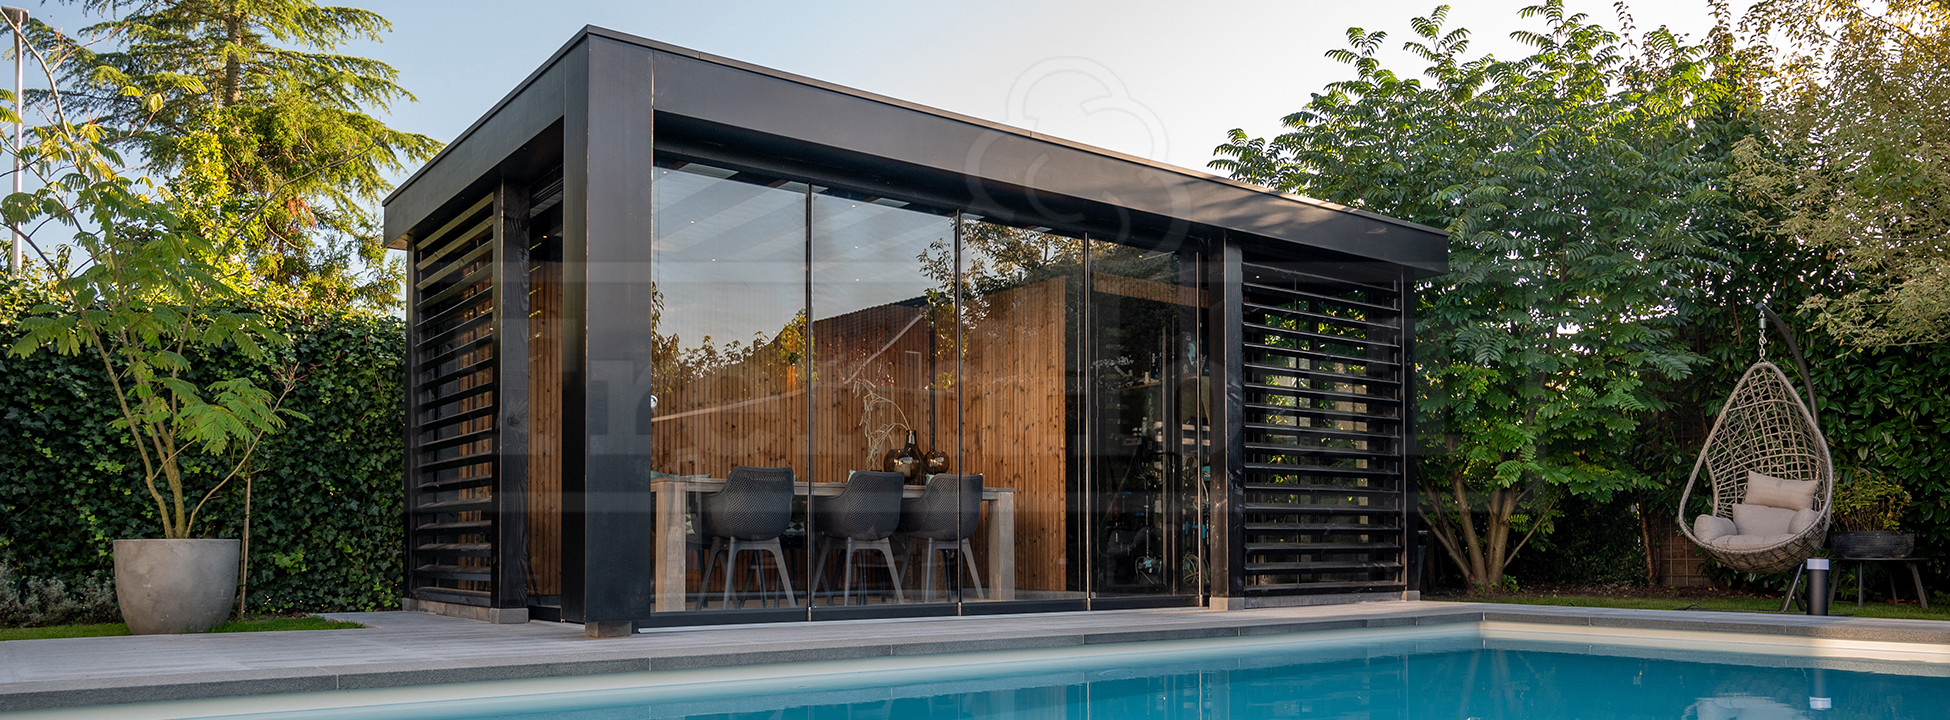 trendhout-douglas-luxe-moderne-houten-overkapping-poolhouse-bij-zwembad-bijgebouw-bouwen-modern-strakke-stijl